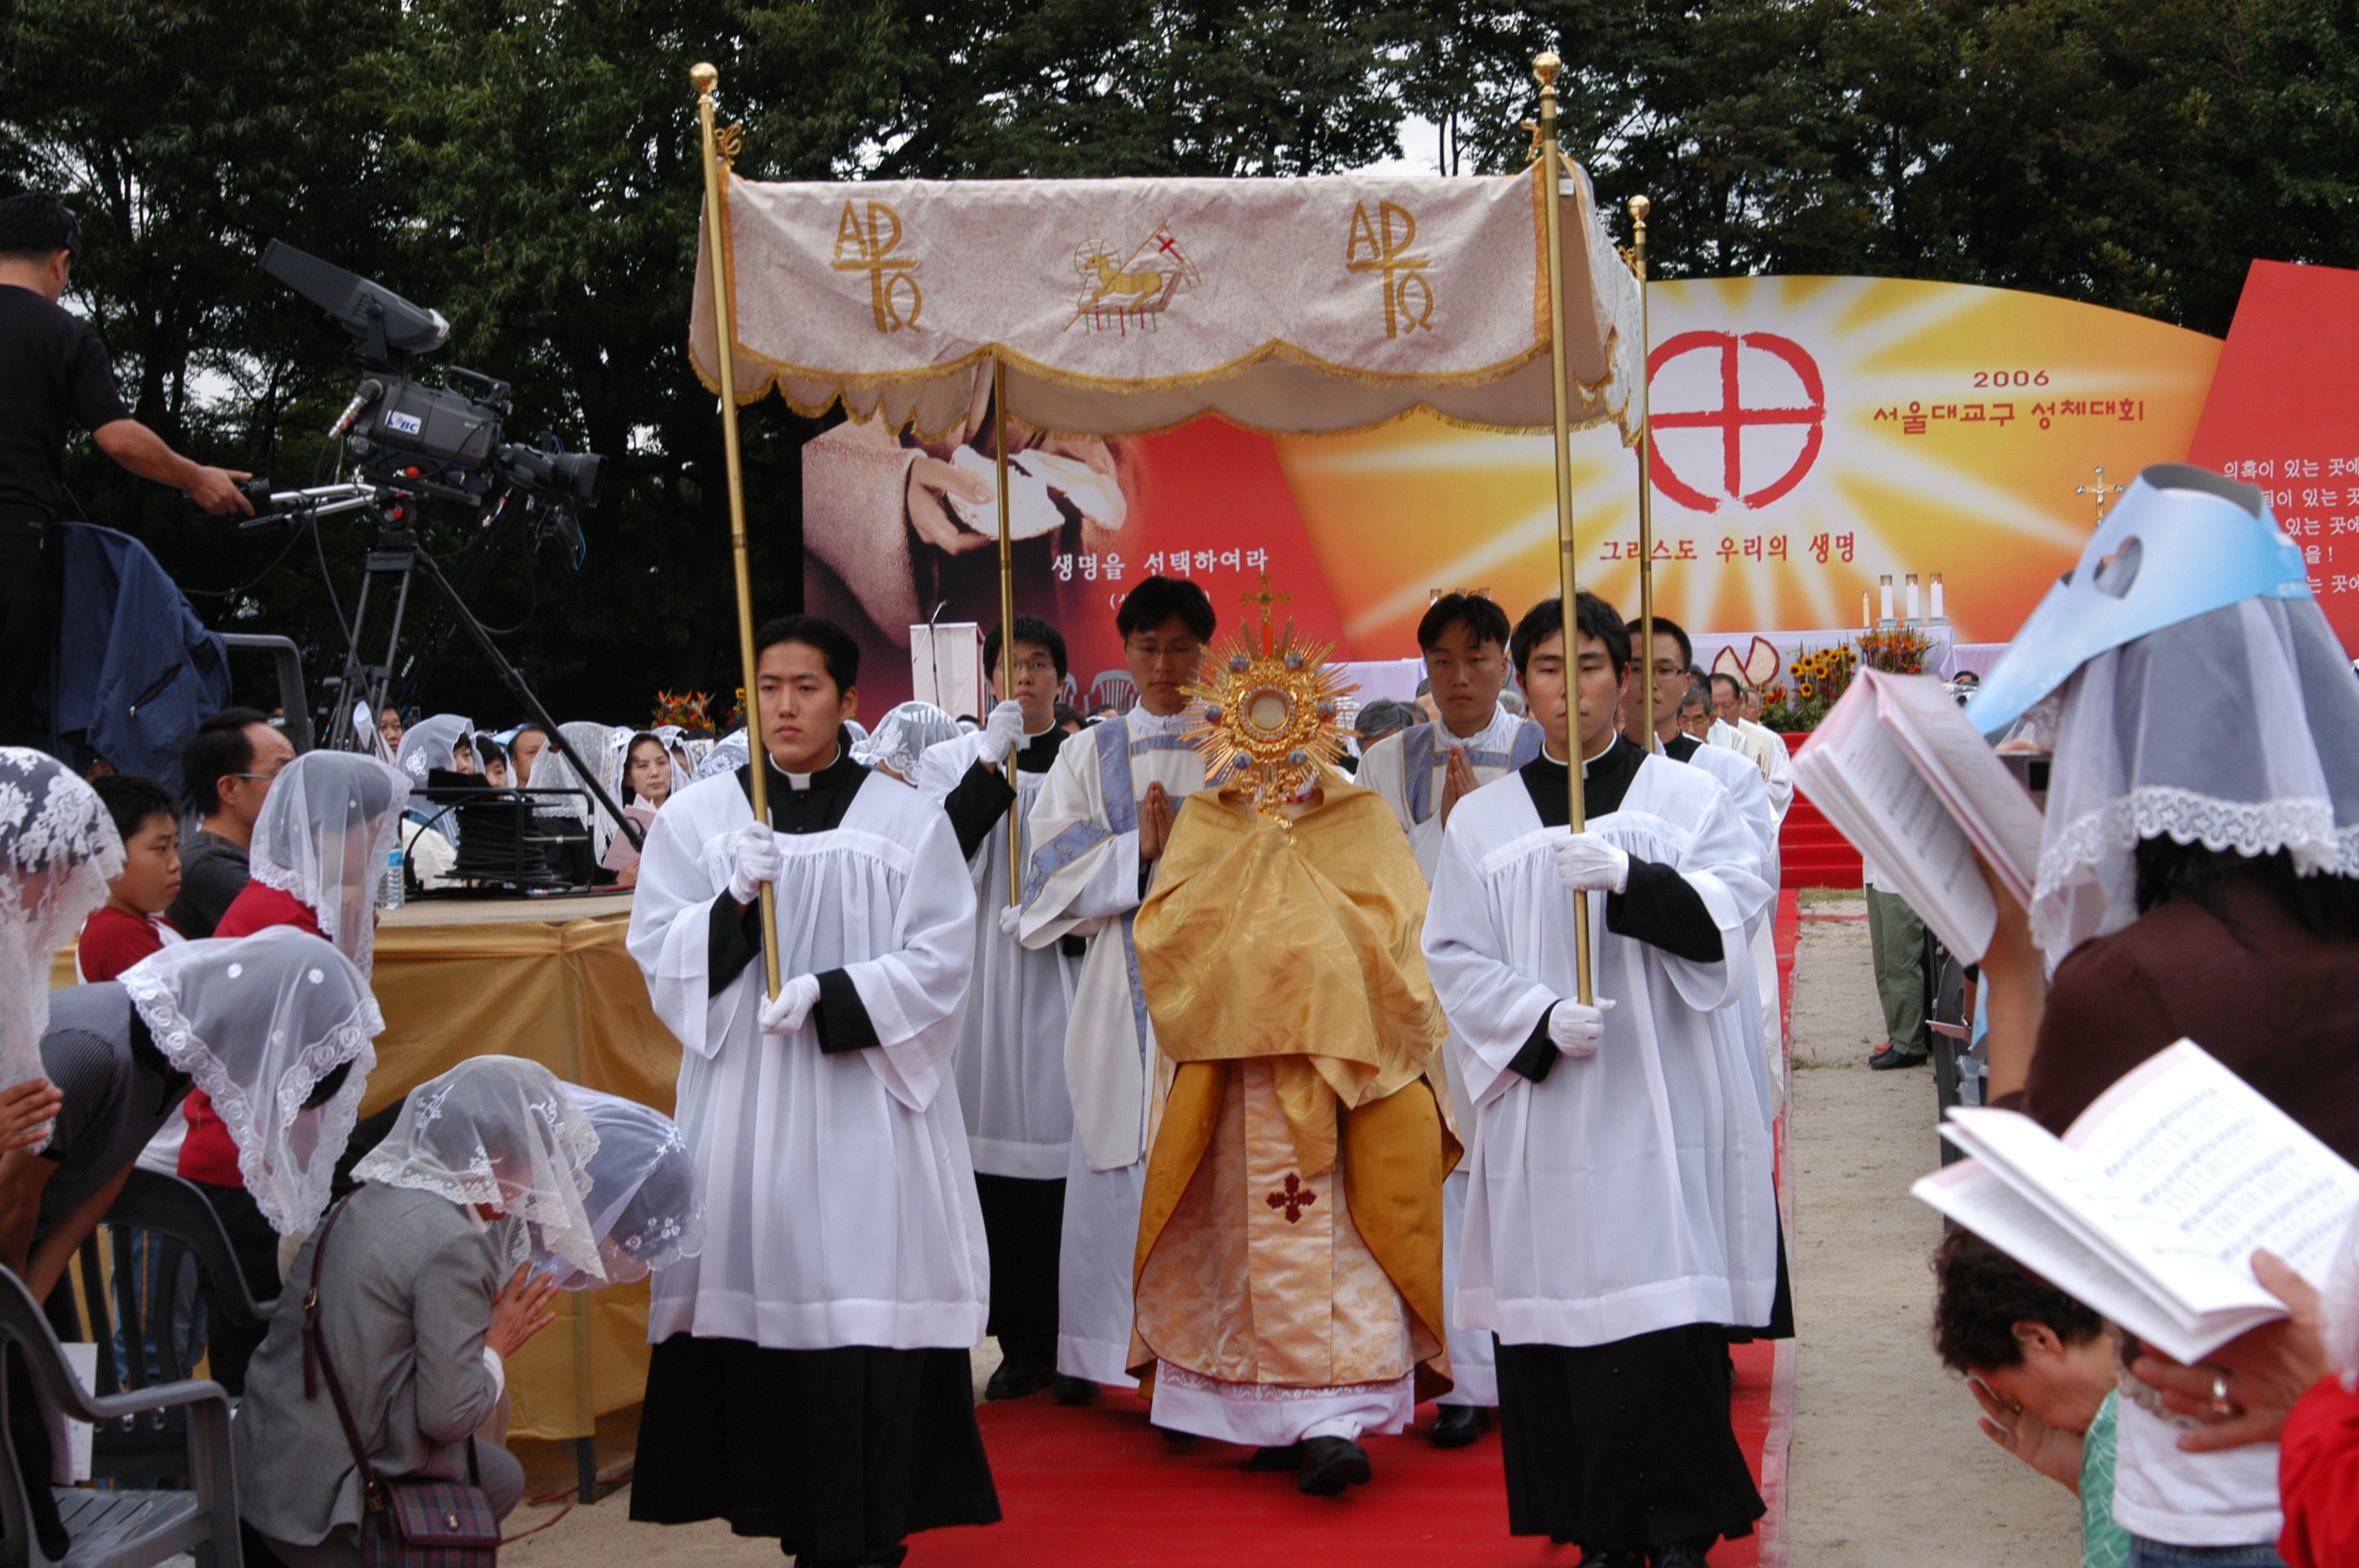 서울대교구성체대회(2006.9.16)의 관련된 이미지 입니다.